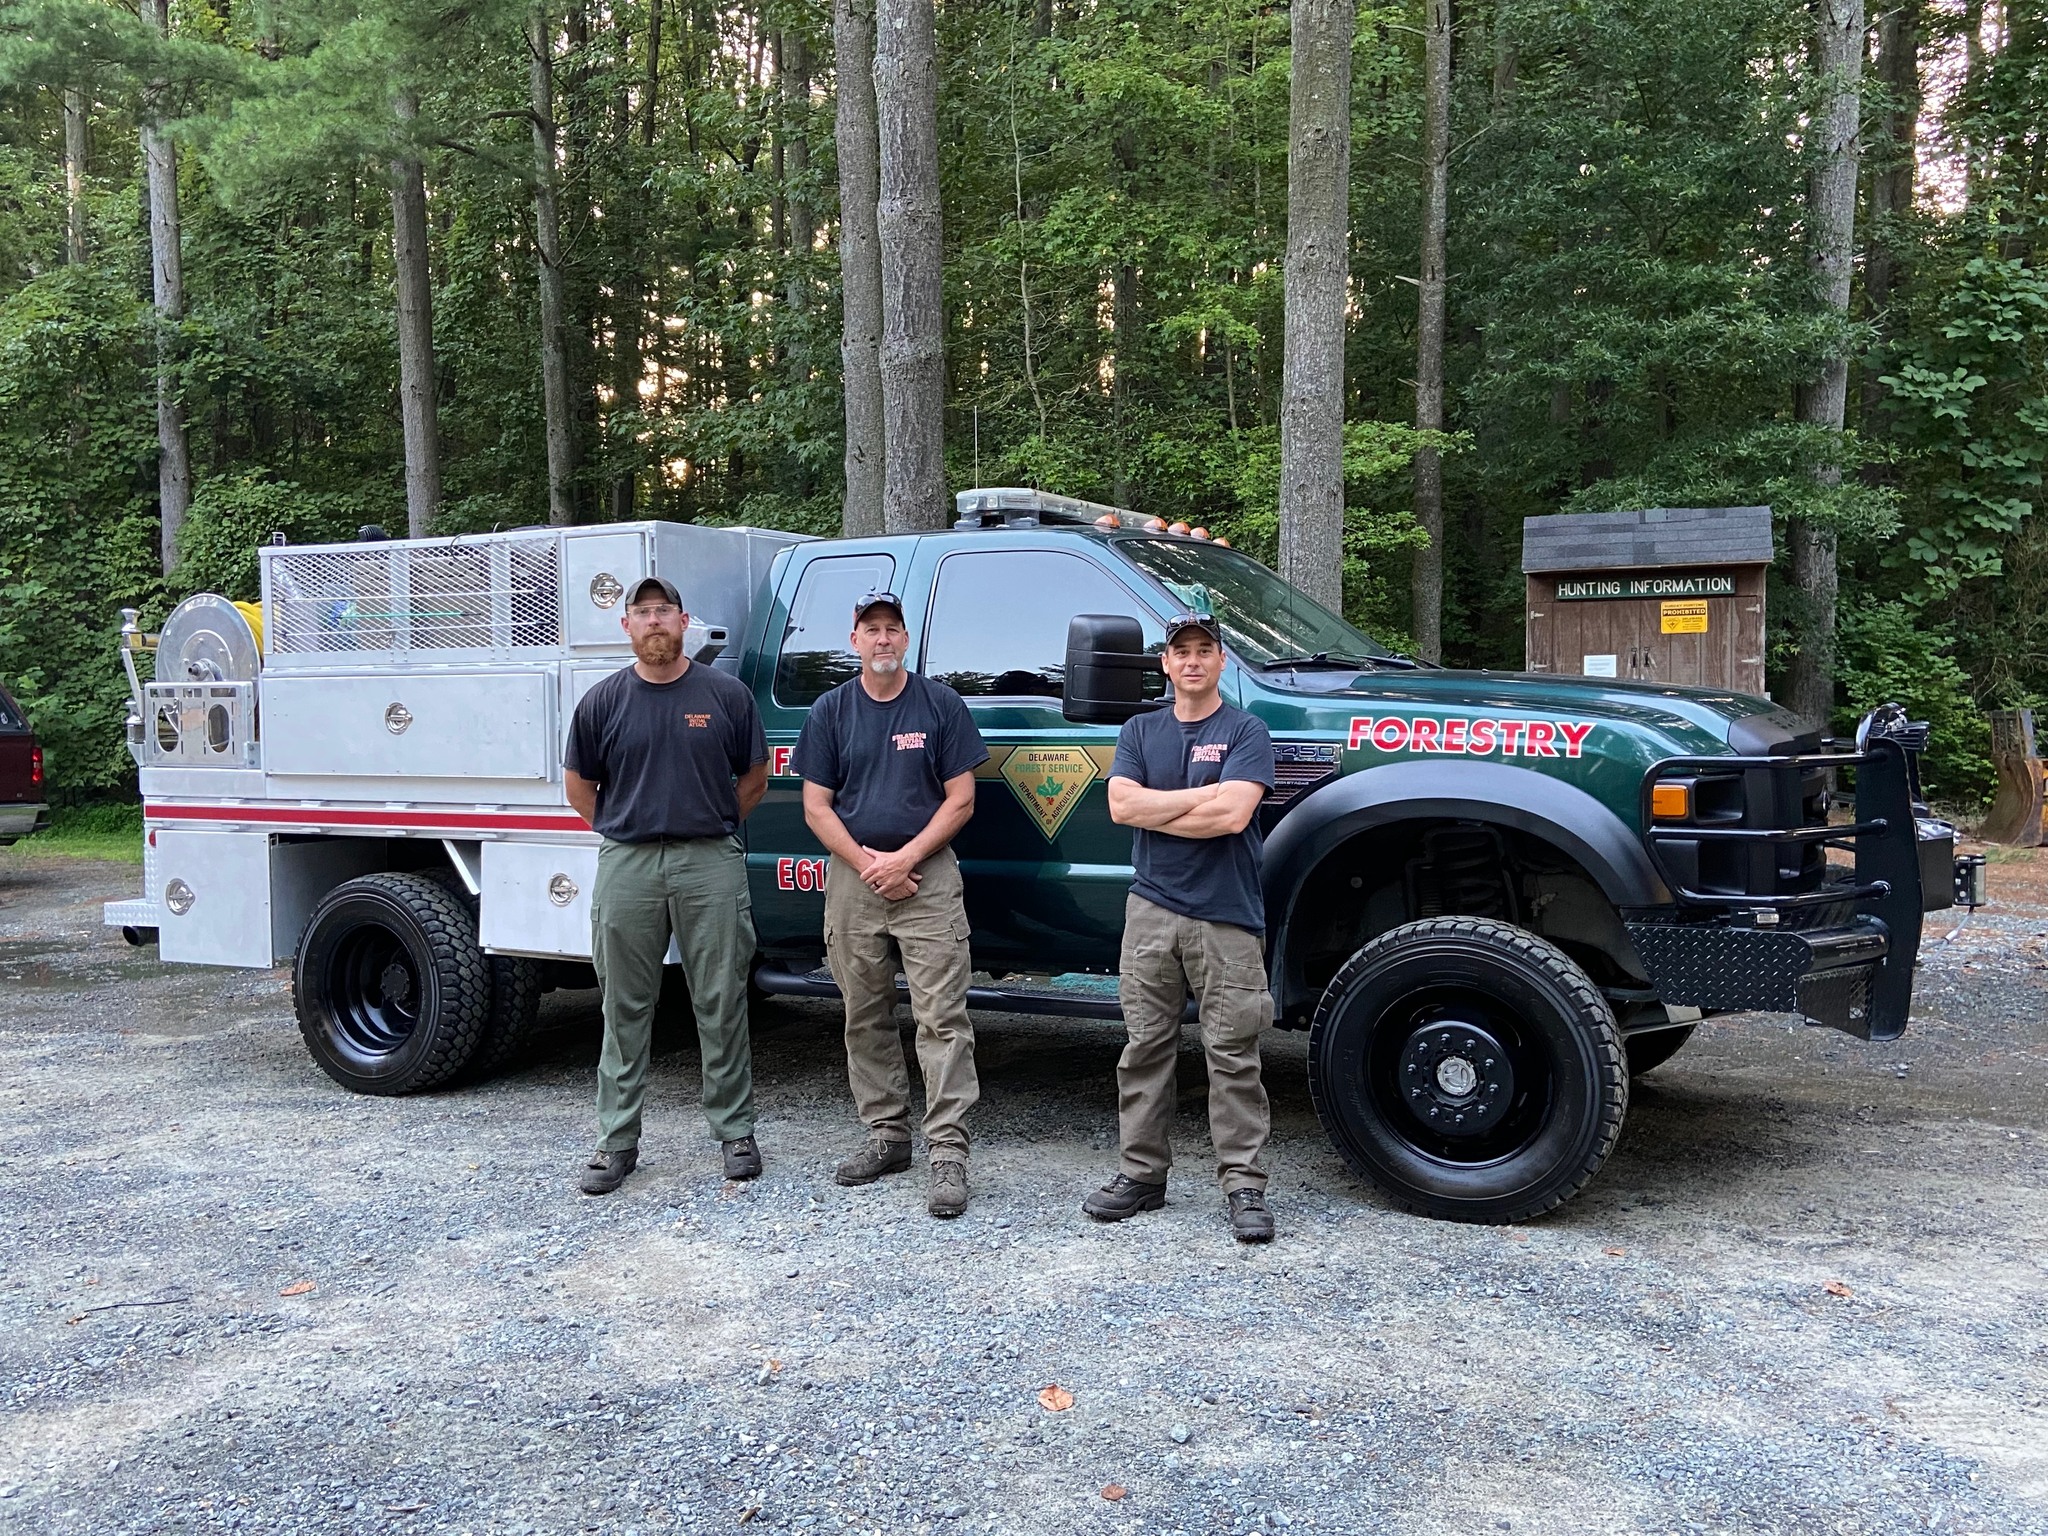 3-person wildland fire engine crew from Blackbird State Forest